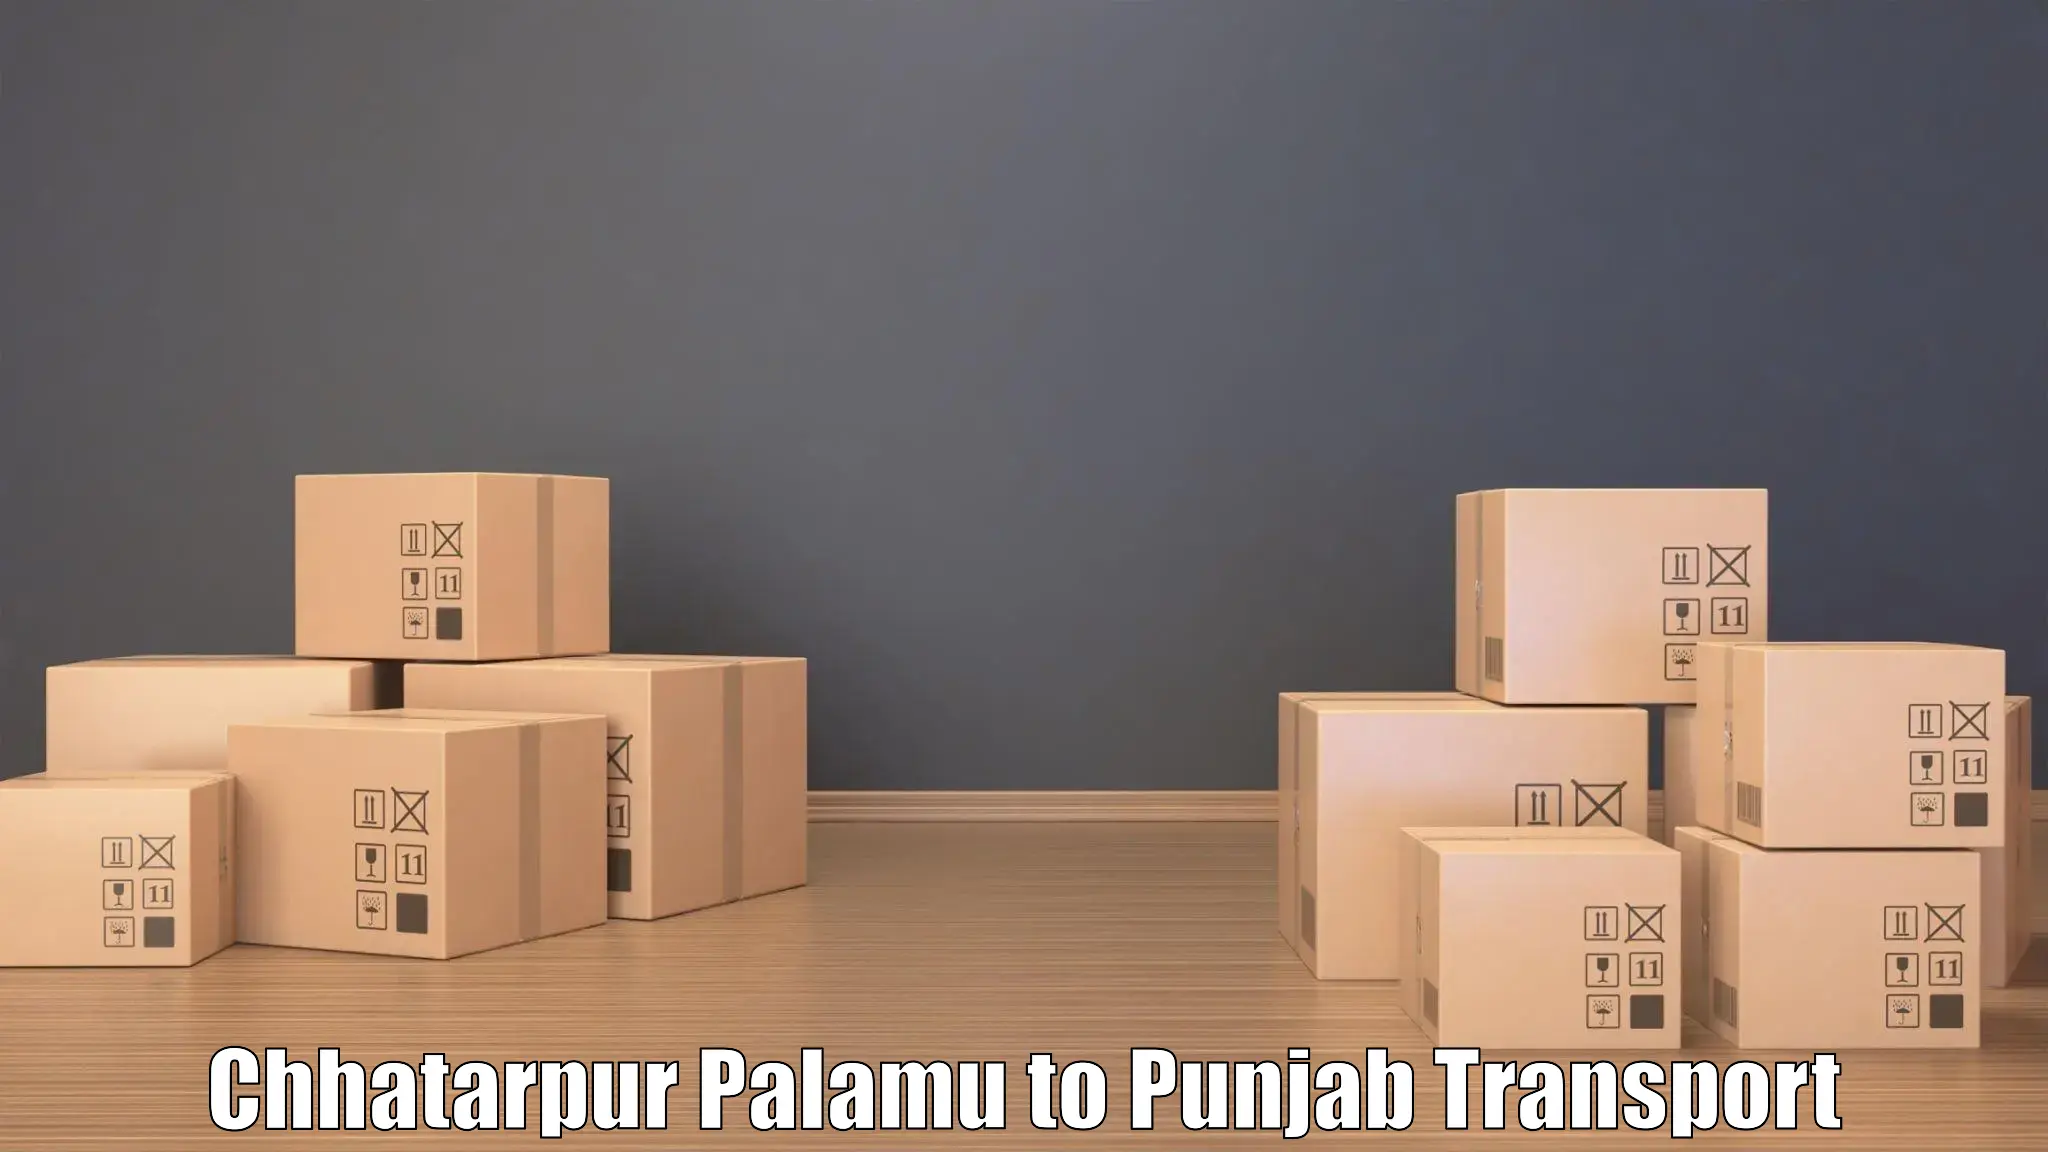 Cargo train transport services Chhatarpur Palamu to Phagwara